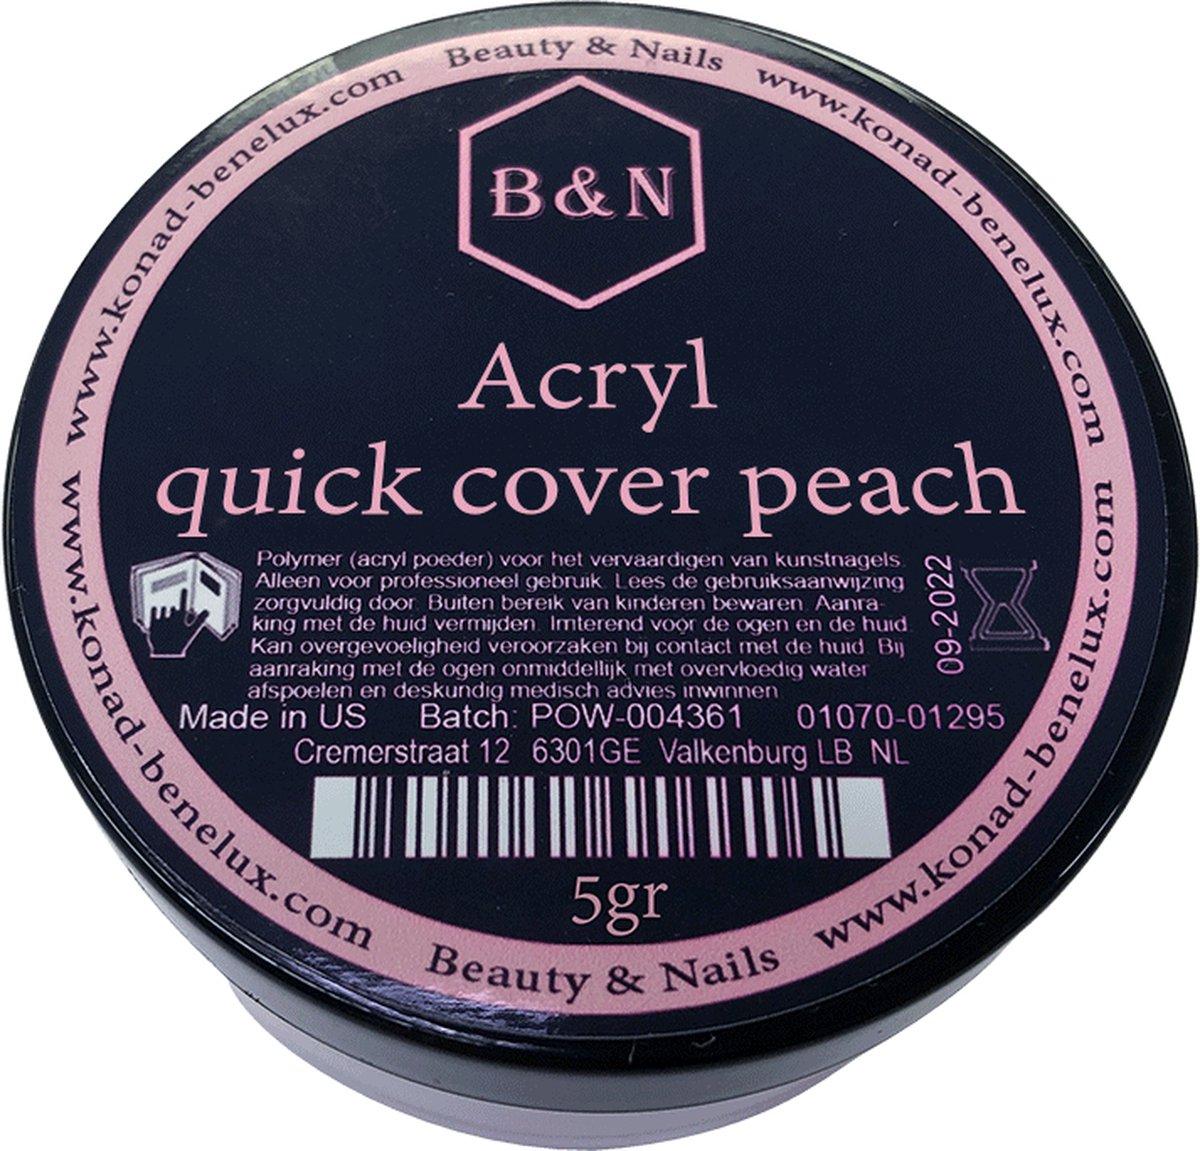 Acryl - quick cover peach - 5 gr | B&N - acrylpoeder - VEGAN - acrylpoeder